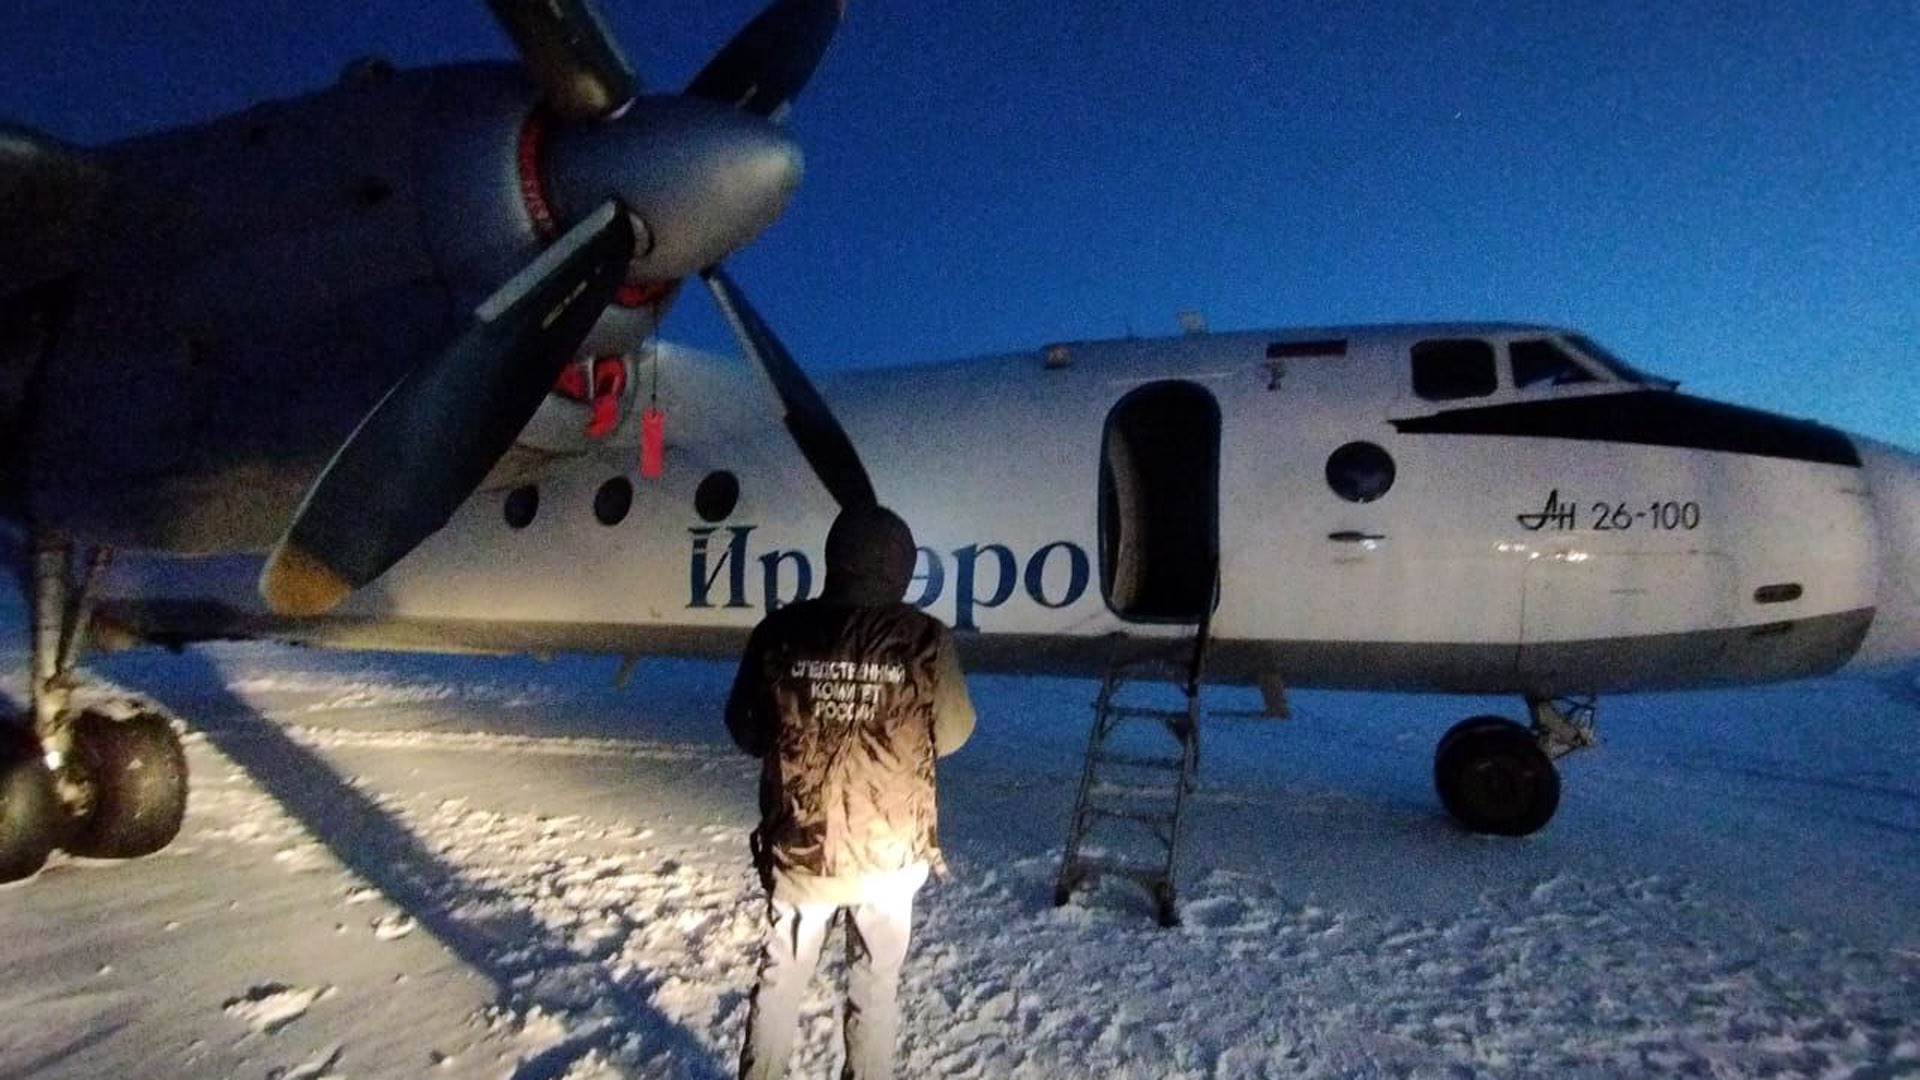 Пассажир чуть не выпал из самолёта до Магадана из-за открытия двери во время полёта